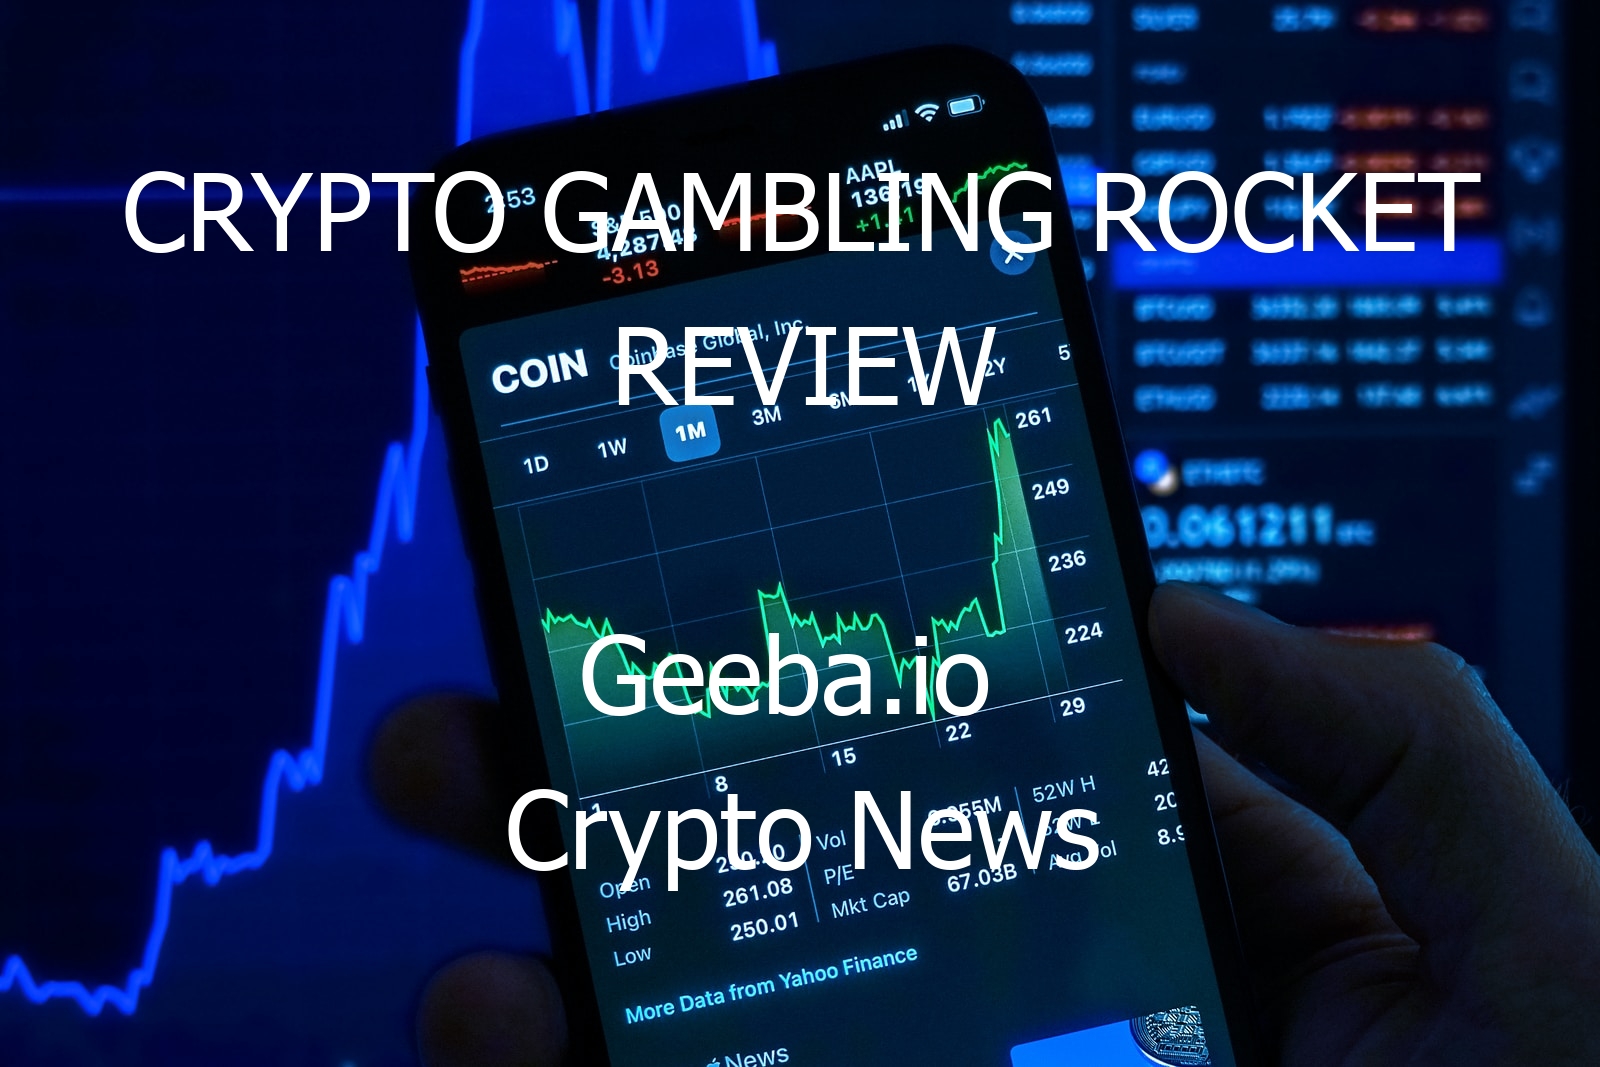 crypto gambling rocket review 10494